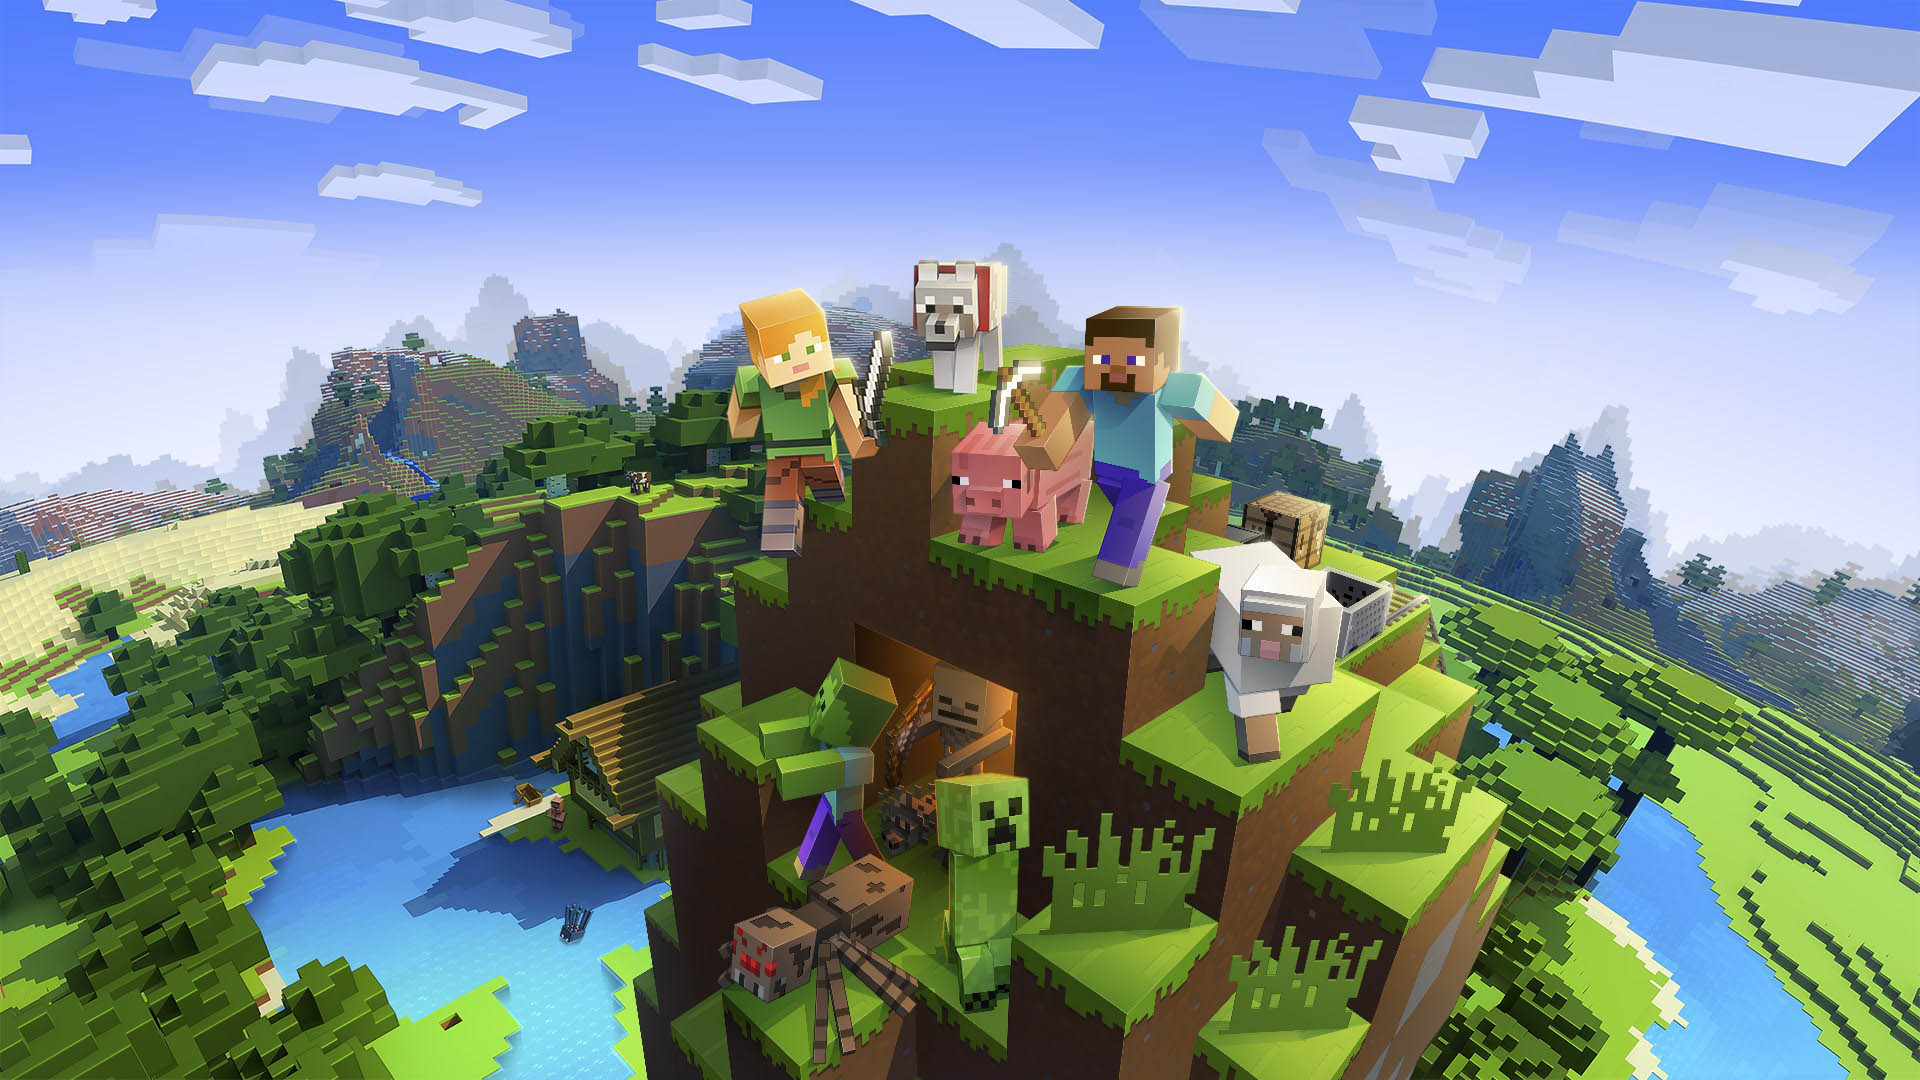 Ảnh Minecraft đẹp - Tổng hợp hình ảnh Minecraft đẹp nhất